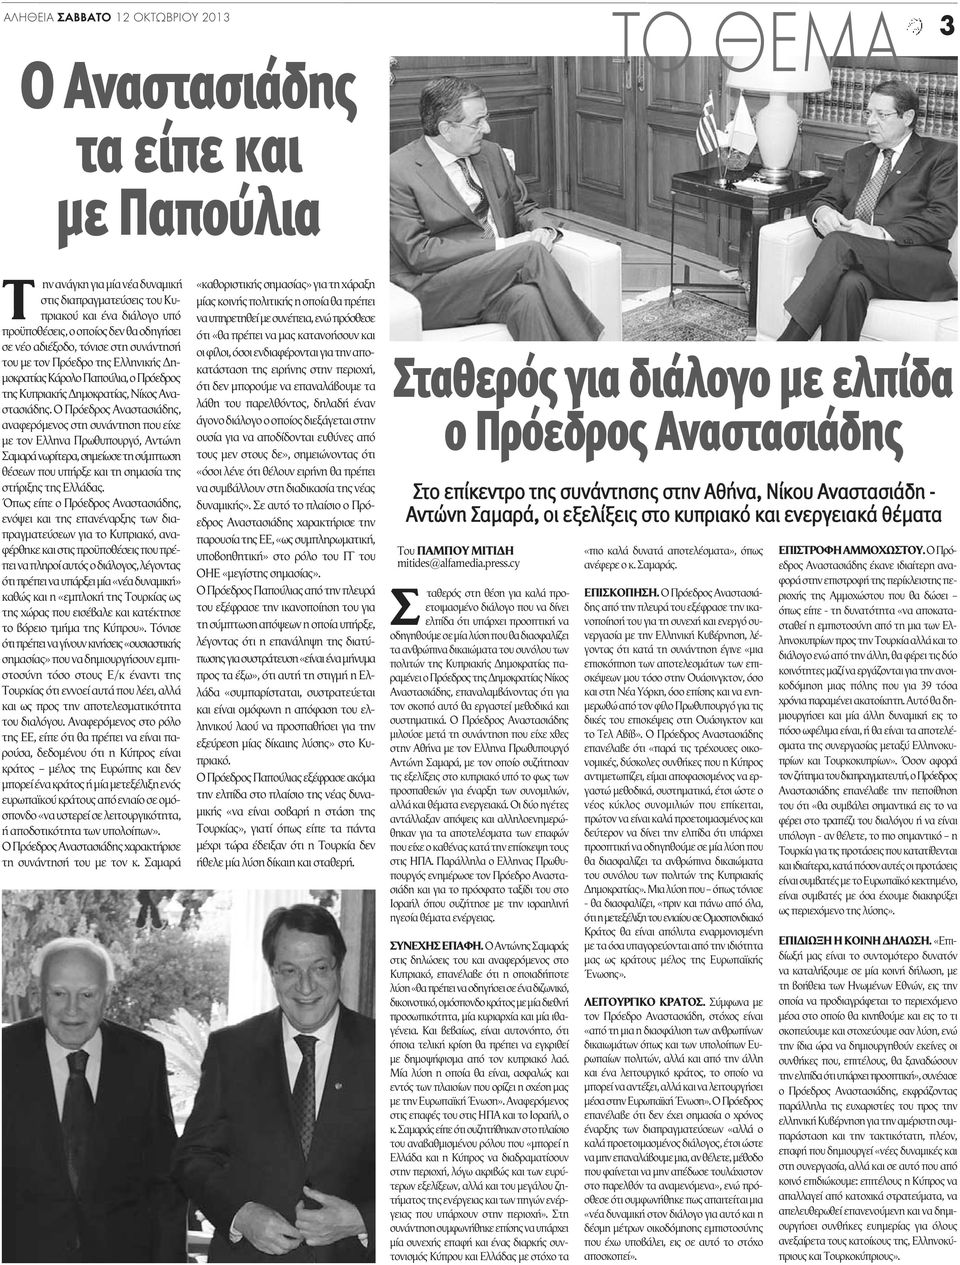 Ο Πρόεδρος Αναστασιάδης, αναφερόμενος στη συνάντηση που είχε με τον Ελληνα Πρωθυπουργό, Αντώνη Σαμαρά νωρίτερα, σημείωσε τη σύμπτωση θέσεων που υπήρξε και τη σημασία της στήριξης της Ελλάδας.